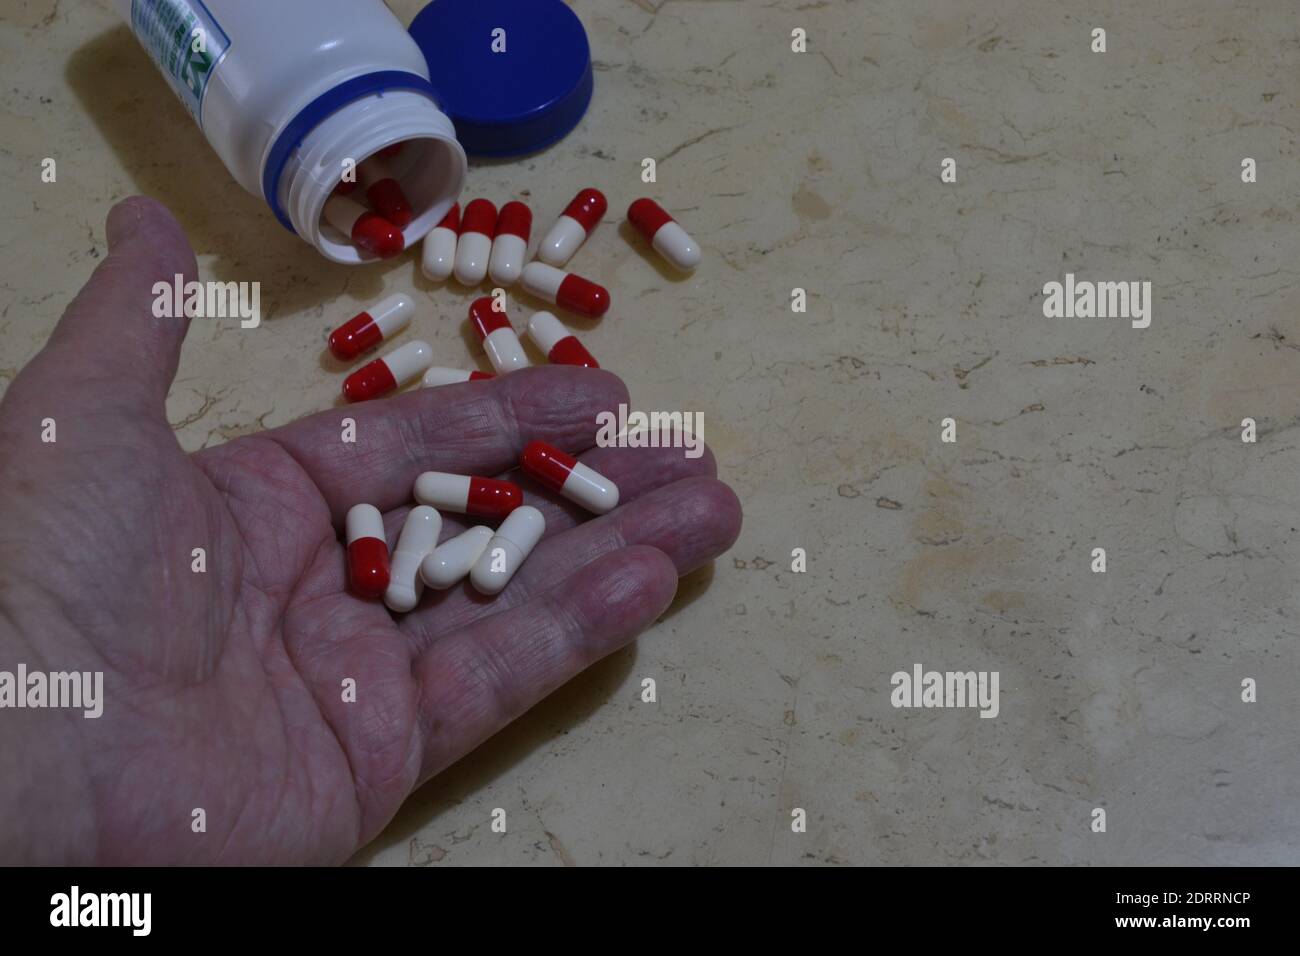 Älterer Mann mit einer Handvoll Pillen zur Behandlung, Glas mit roten und weißen Pillen auf Marmor Hintergrund, Brasilien, Südamerika Stockfoto